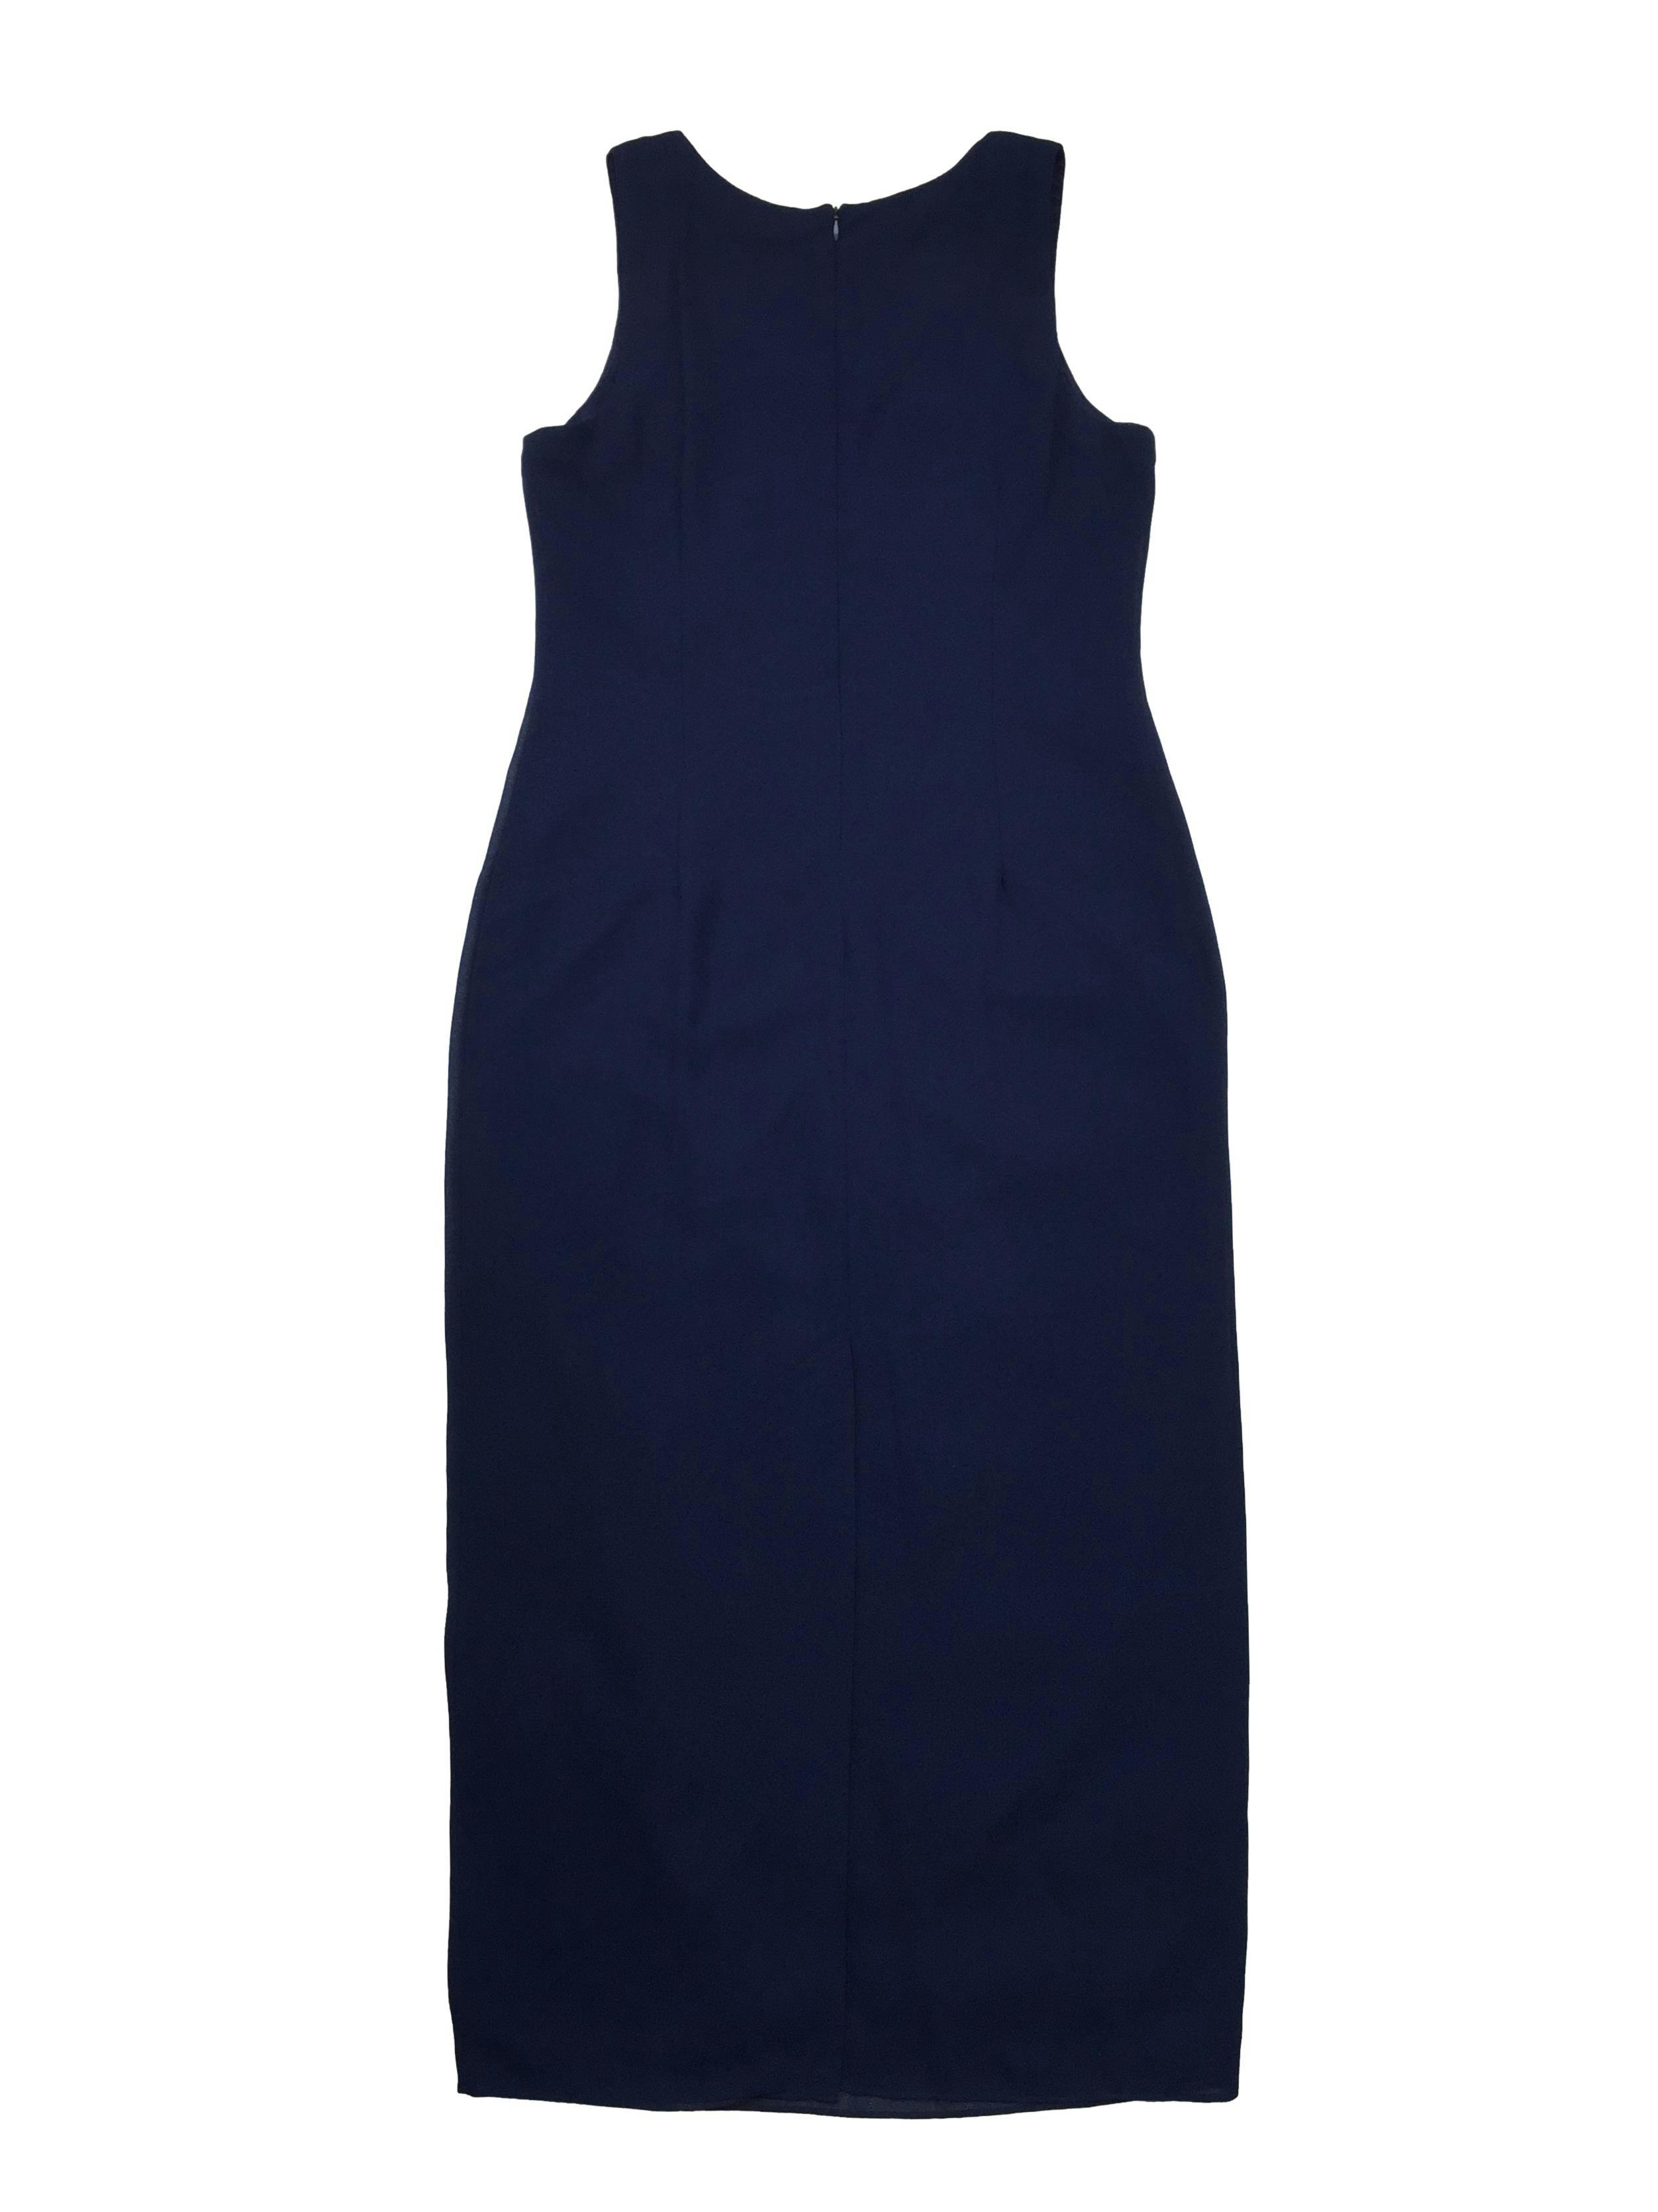 Vestido largo de crepé azul marino, forrado, cierre invisible en la espalda y abertura en la basta. Busto 105 Largo 140cm